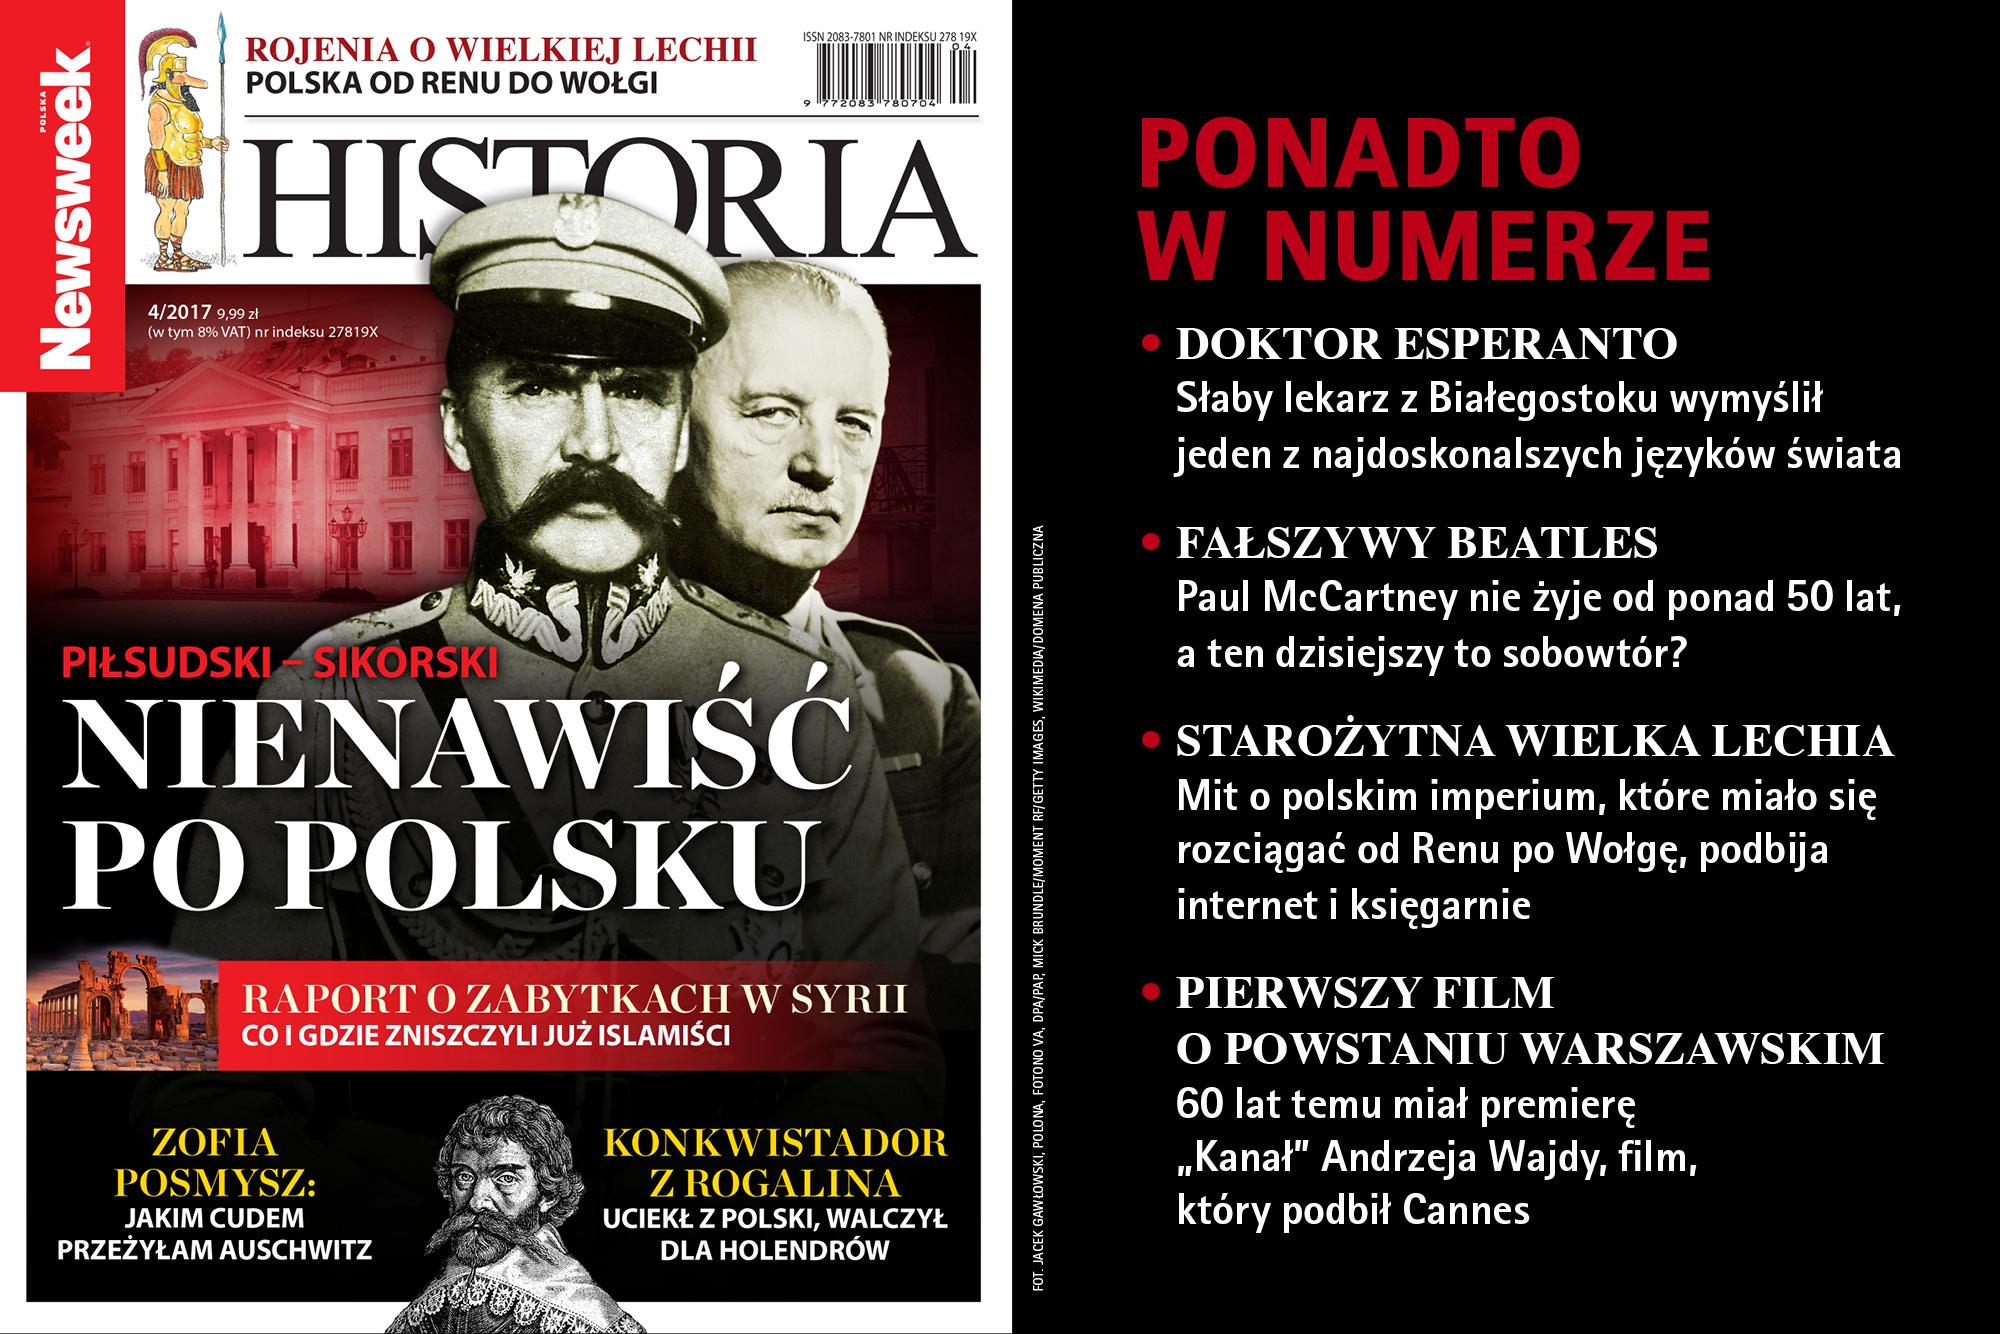 newsweek historia 4/2017 Józef Piłsudski Władysław Sikorski